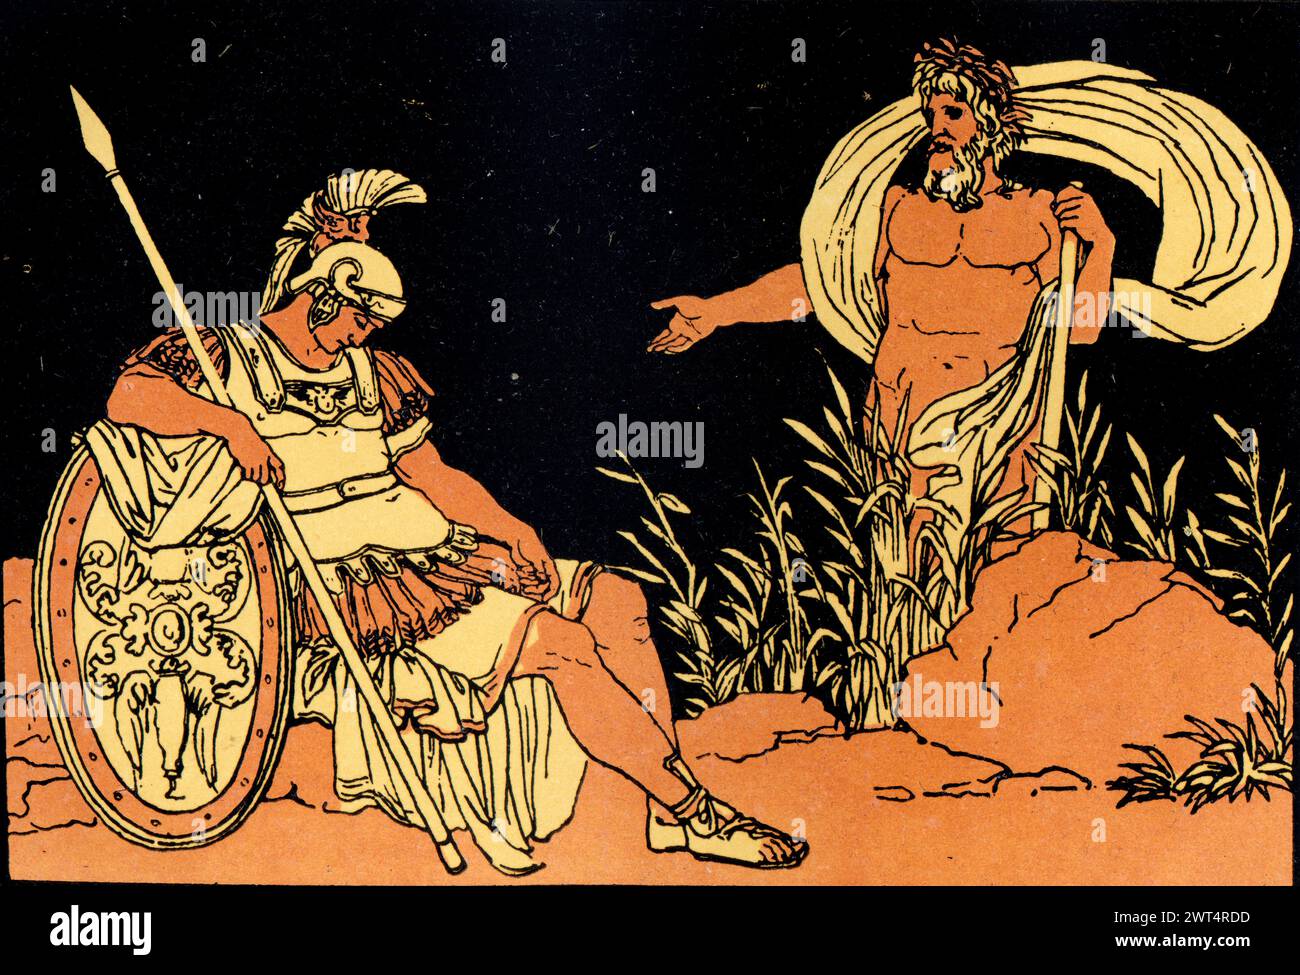 Vintage Illustration römische Mythologie, Aeneas und Tiber, Aeneid ein lateinisches Epos, das die legendäre Geschichte von Aeneas erzählt, einem Trojaner, der vor dem Fall geflohen ist Stockfoto